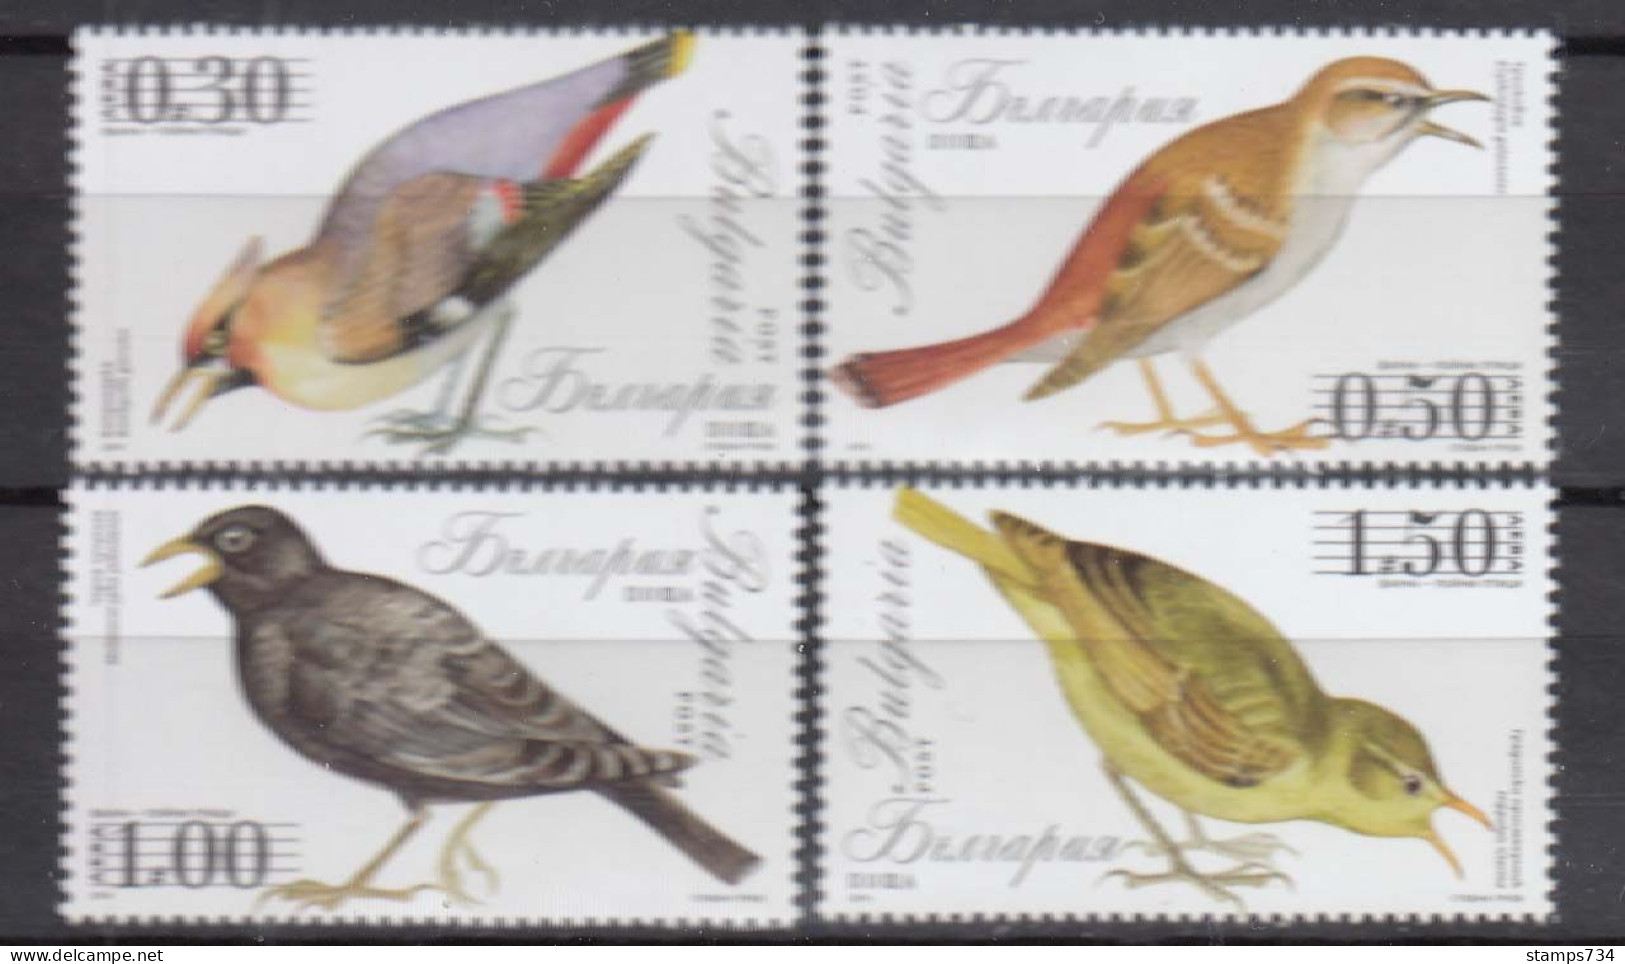 Bulgaria 2014 - Birds, MNH** - Ungebraucht